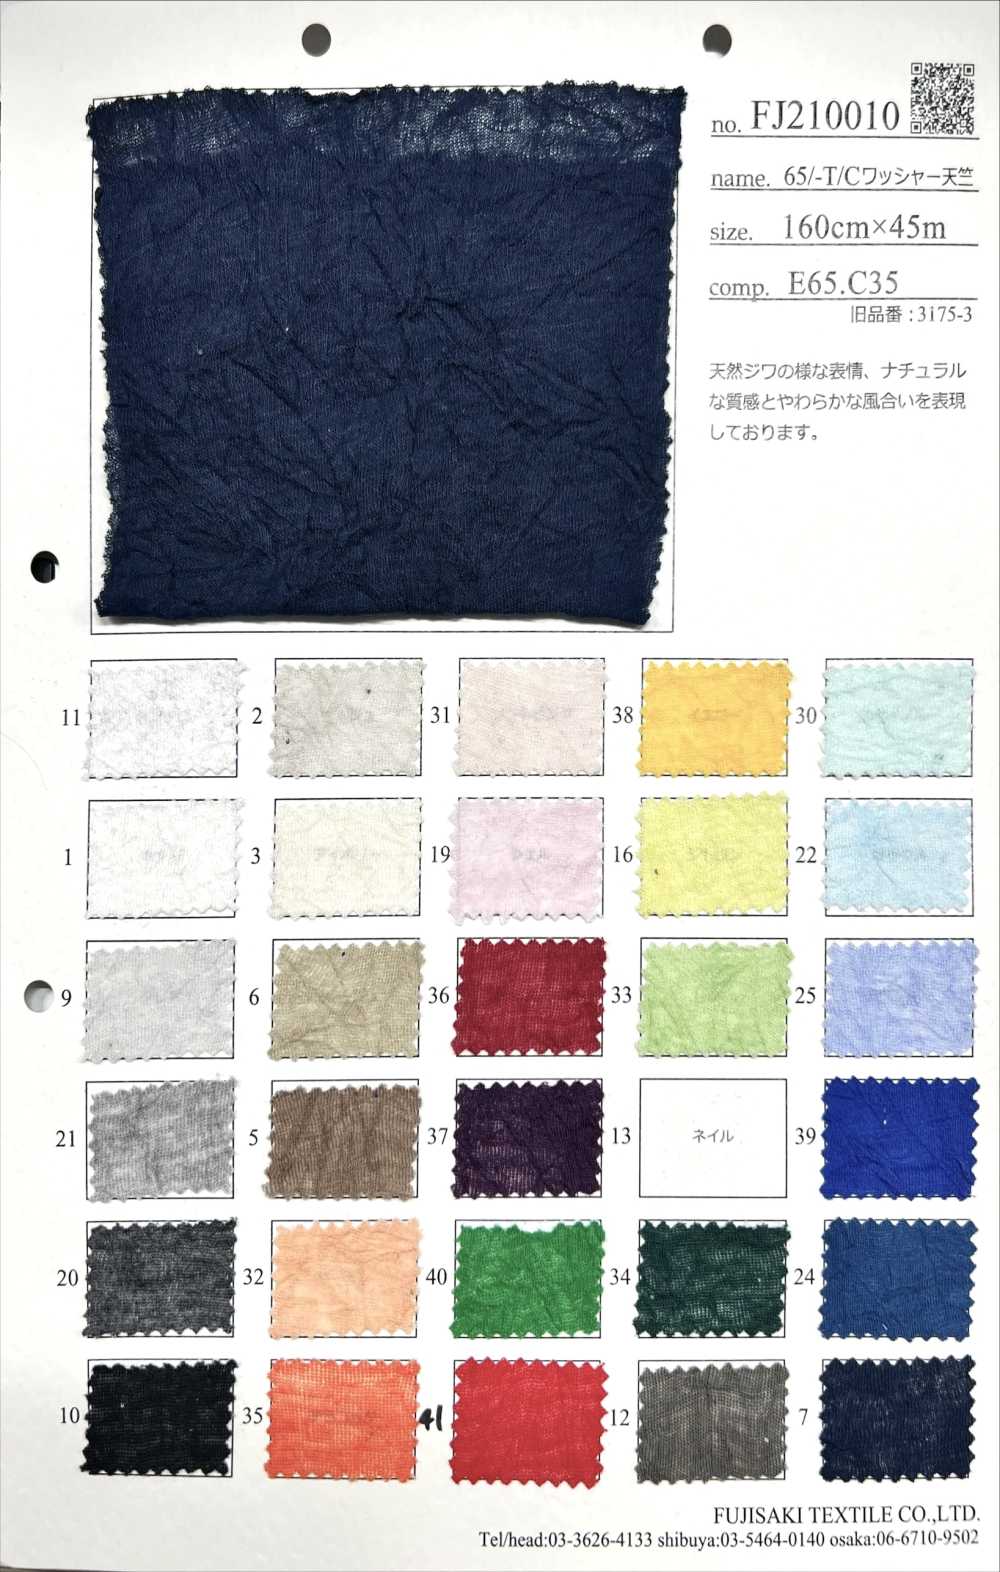 FJ210010 65/-T/C水洗加工豚平針織物[面料] Fujisaki Textile